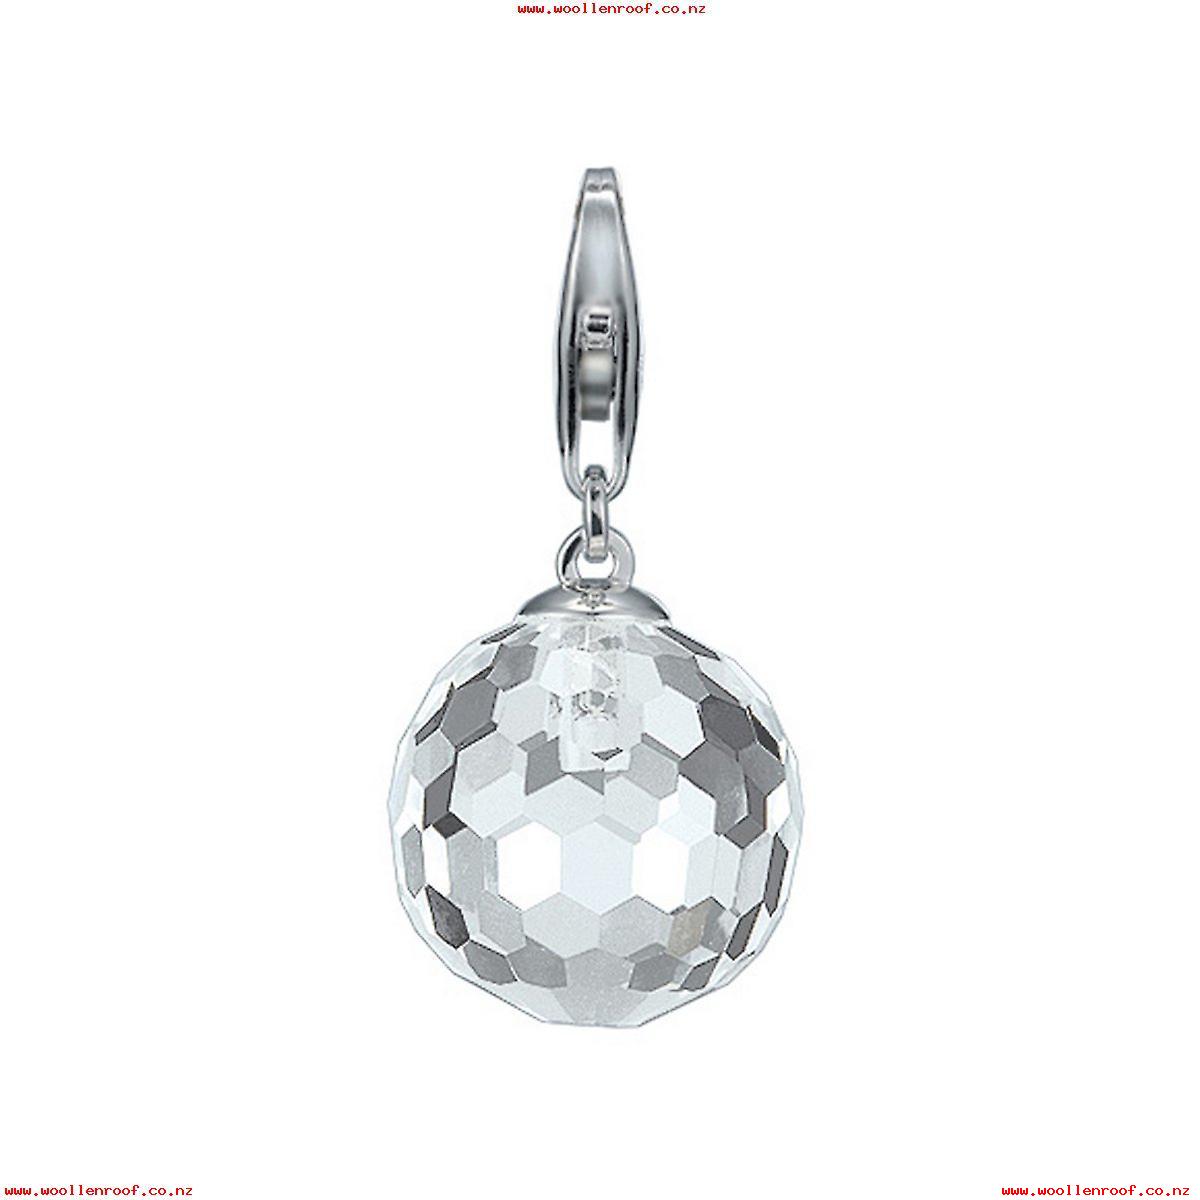 vacker silverberlock i gråfärgad kristall med karbinhake i silver hos EriCsson Ur och Guld